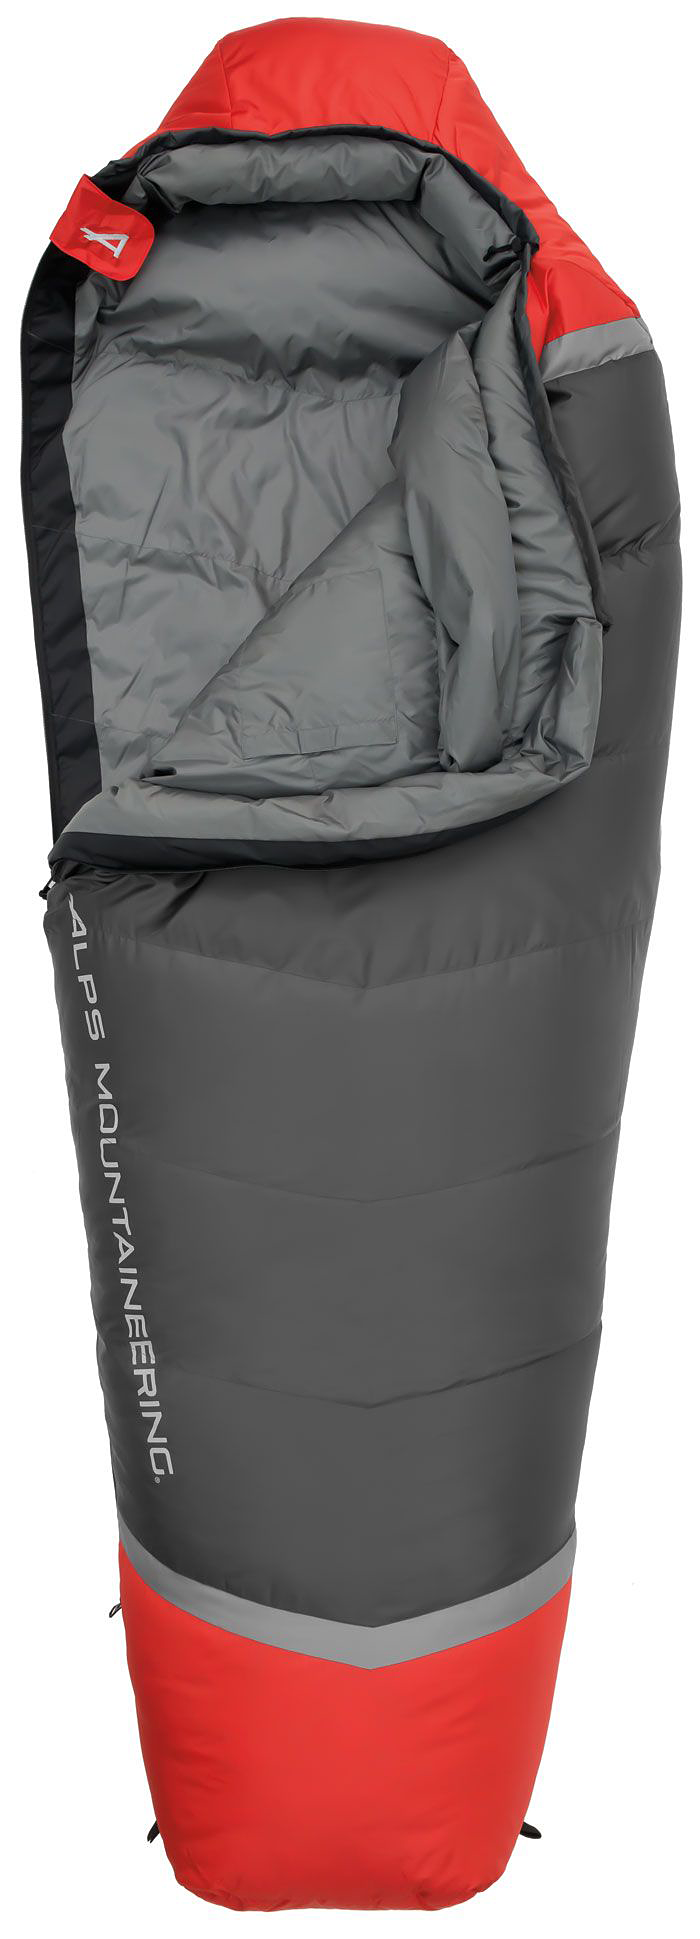 Alps Mountaineering Zenith 0 Mummy Sleeping Bag - Regular